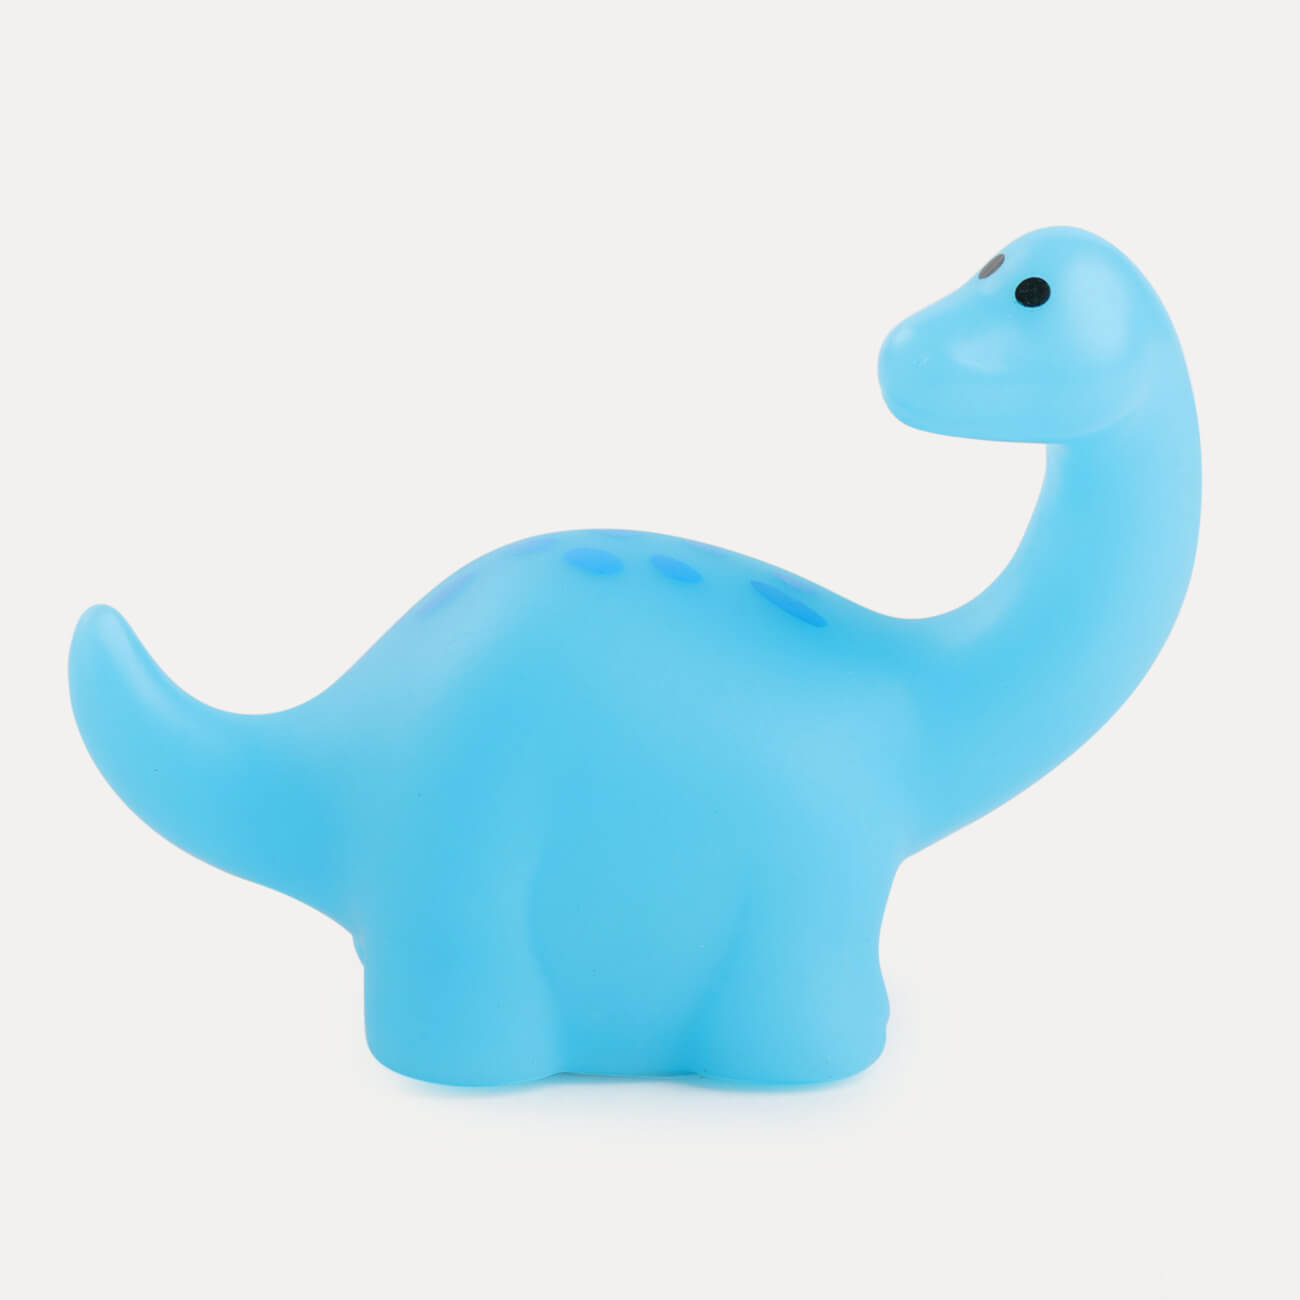 Игрушка для купания, 7х8х4 см, с подсветкой, пластик, зеленая, Динозавр, Dino интерактивная игрушка динозавр трицератопс